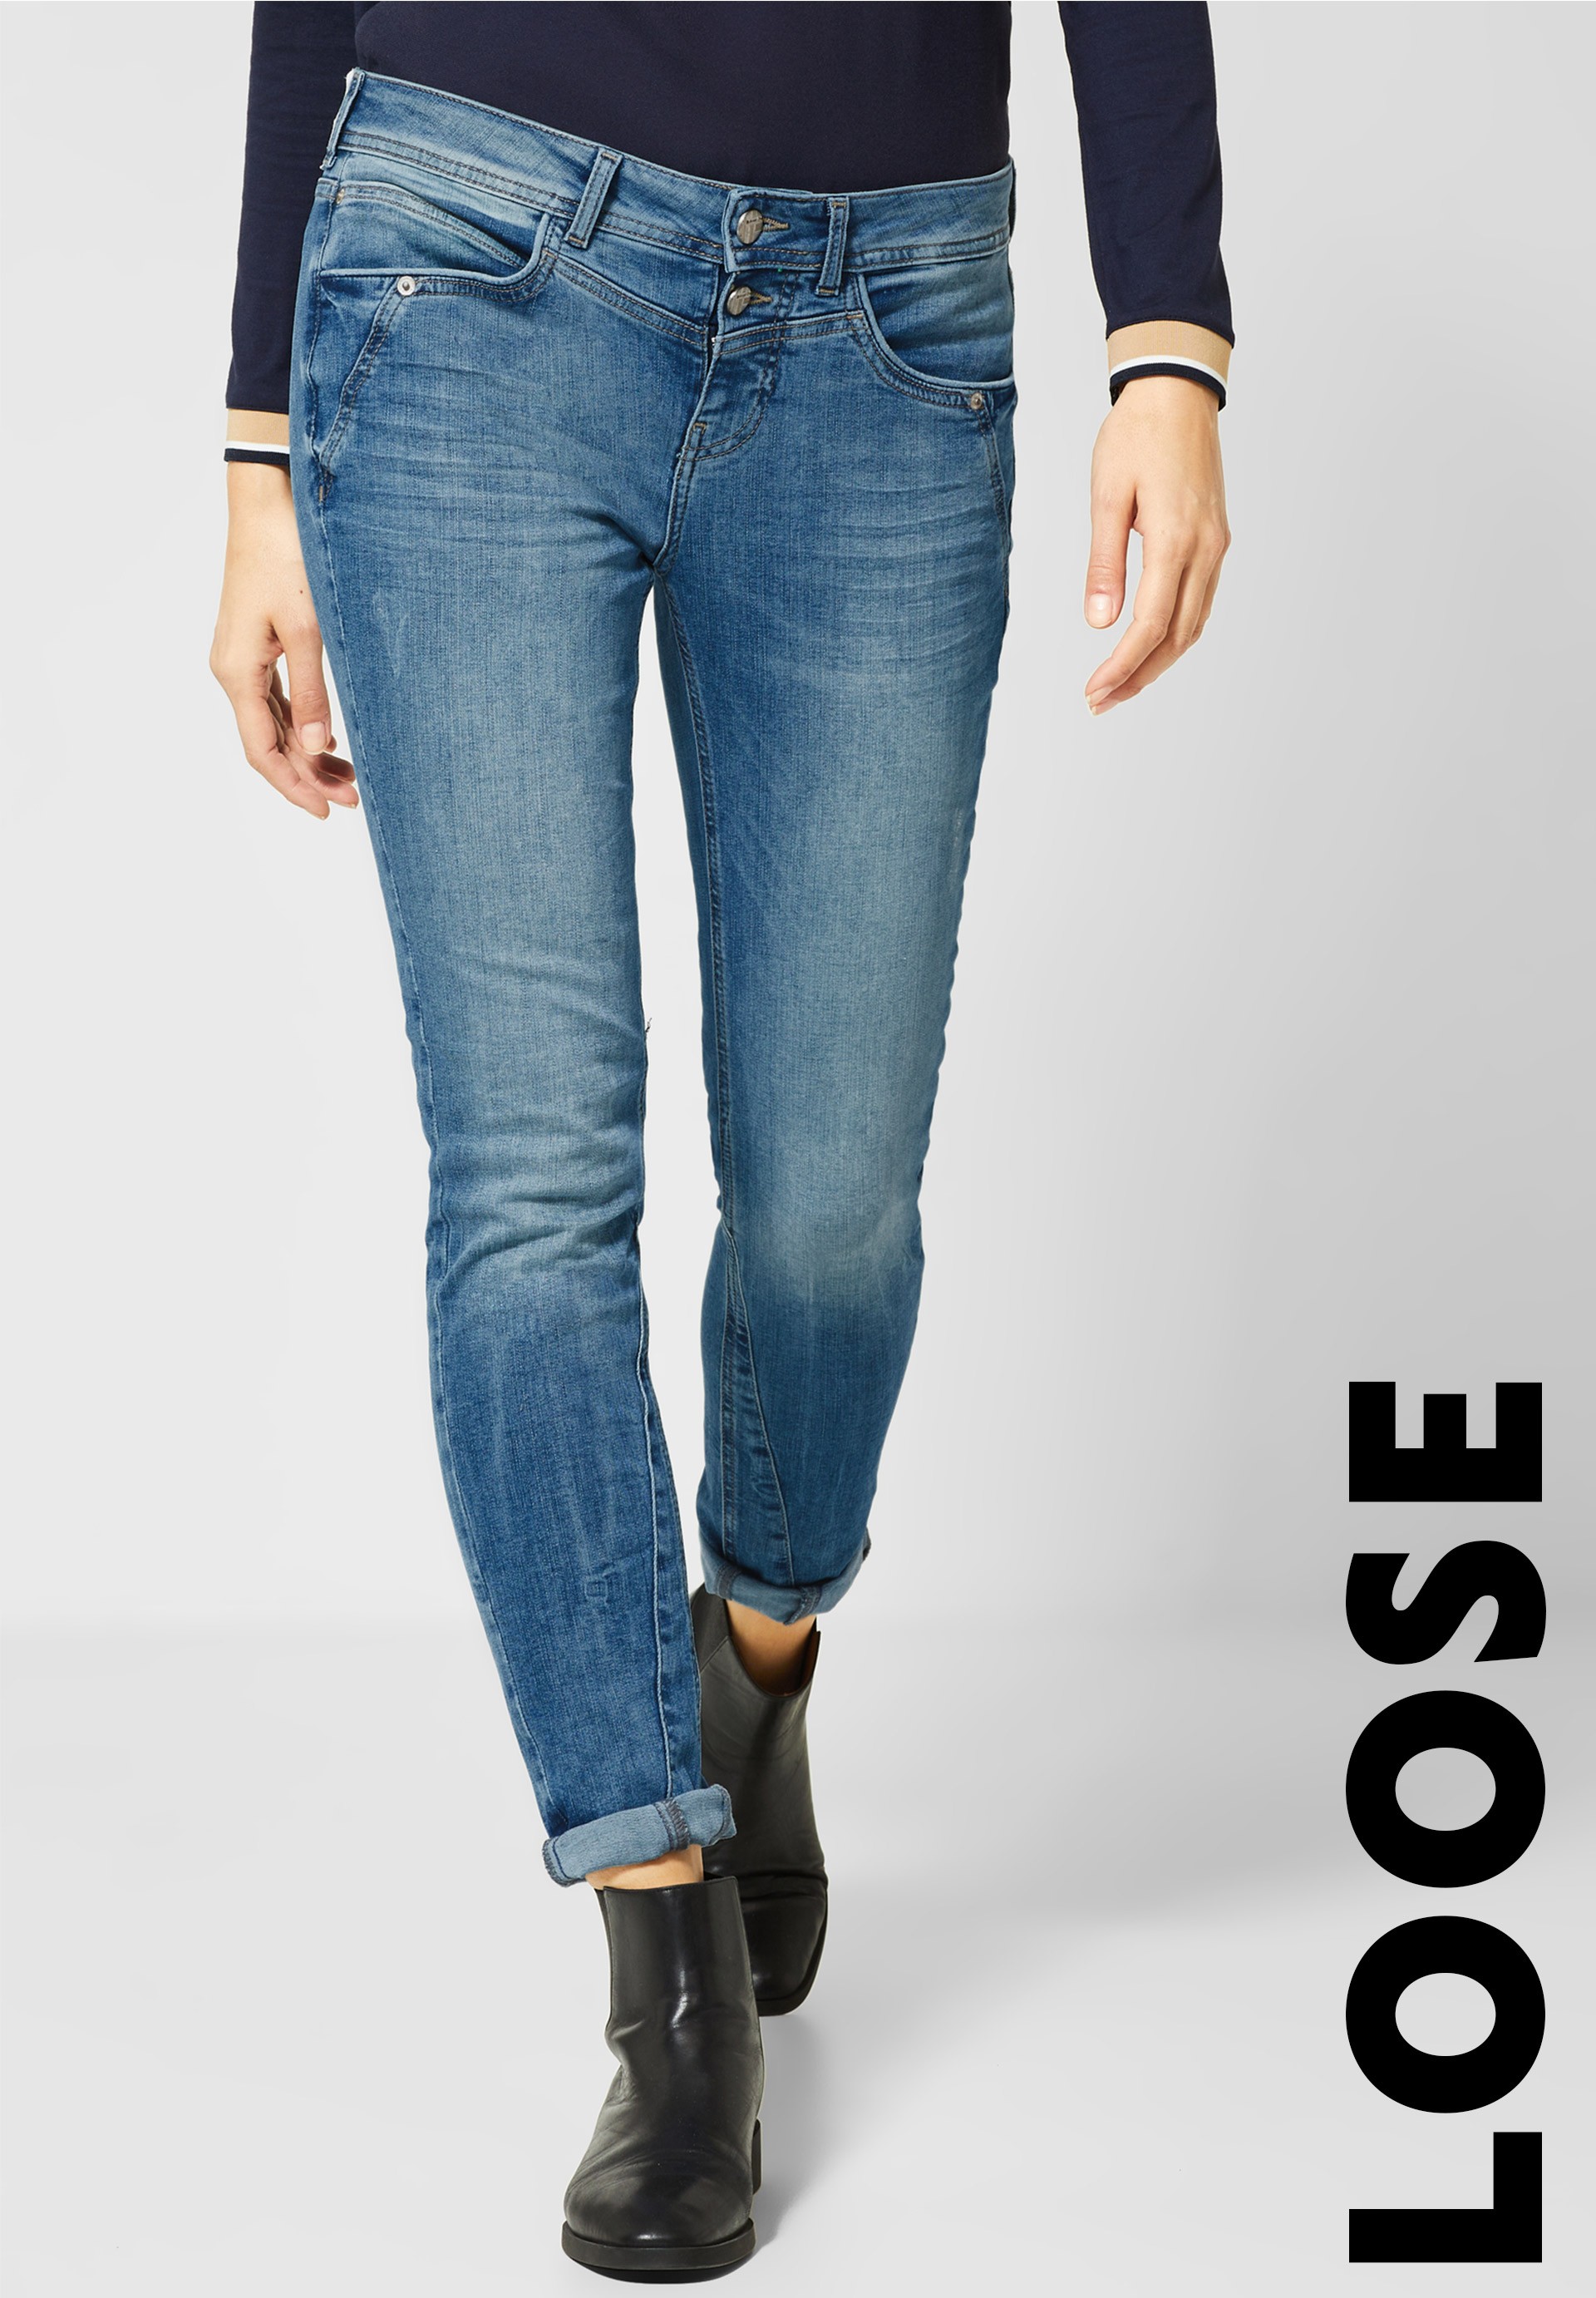 Jeans Passformen – welches ist die richtige? | Street One Blog